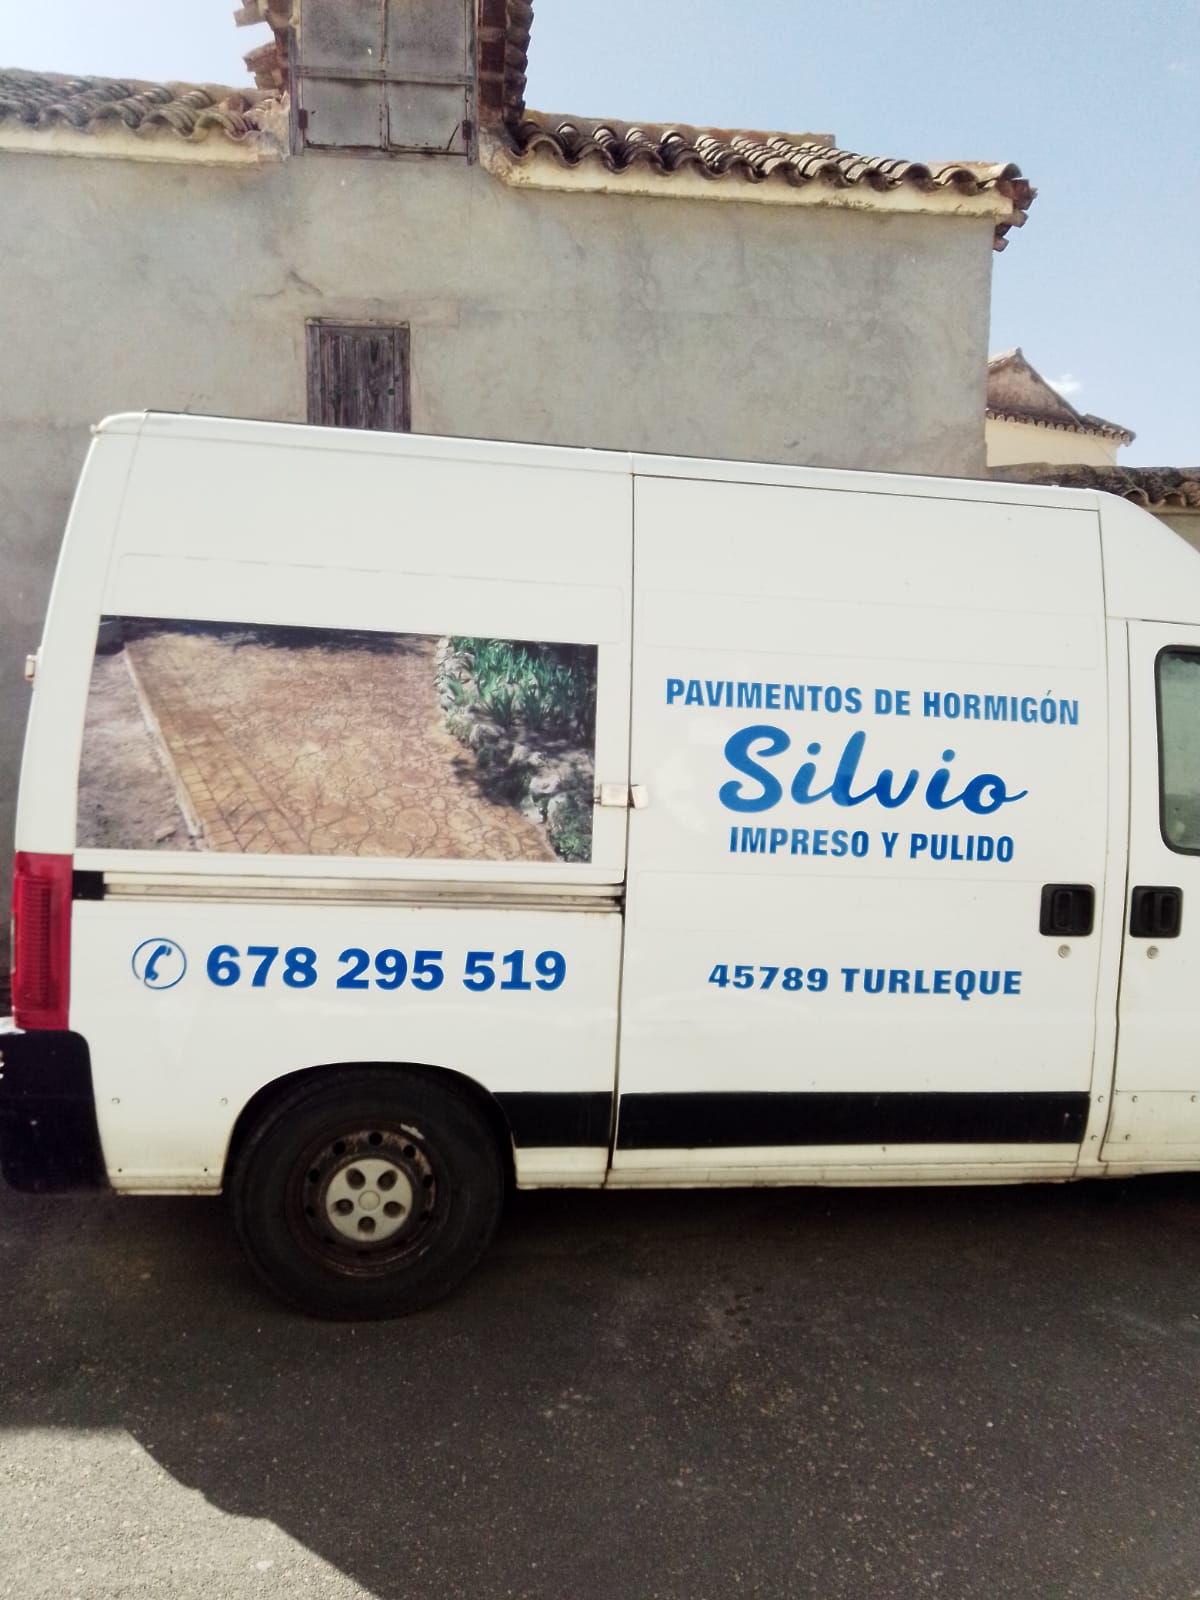 Images Pavimentos Silvio